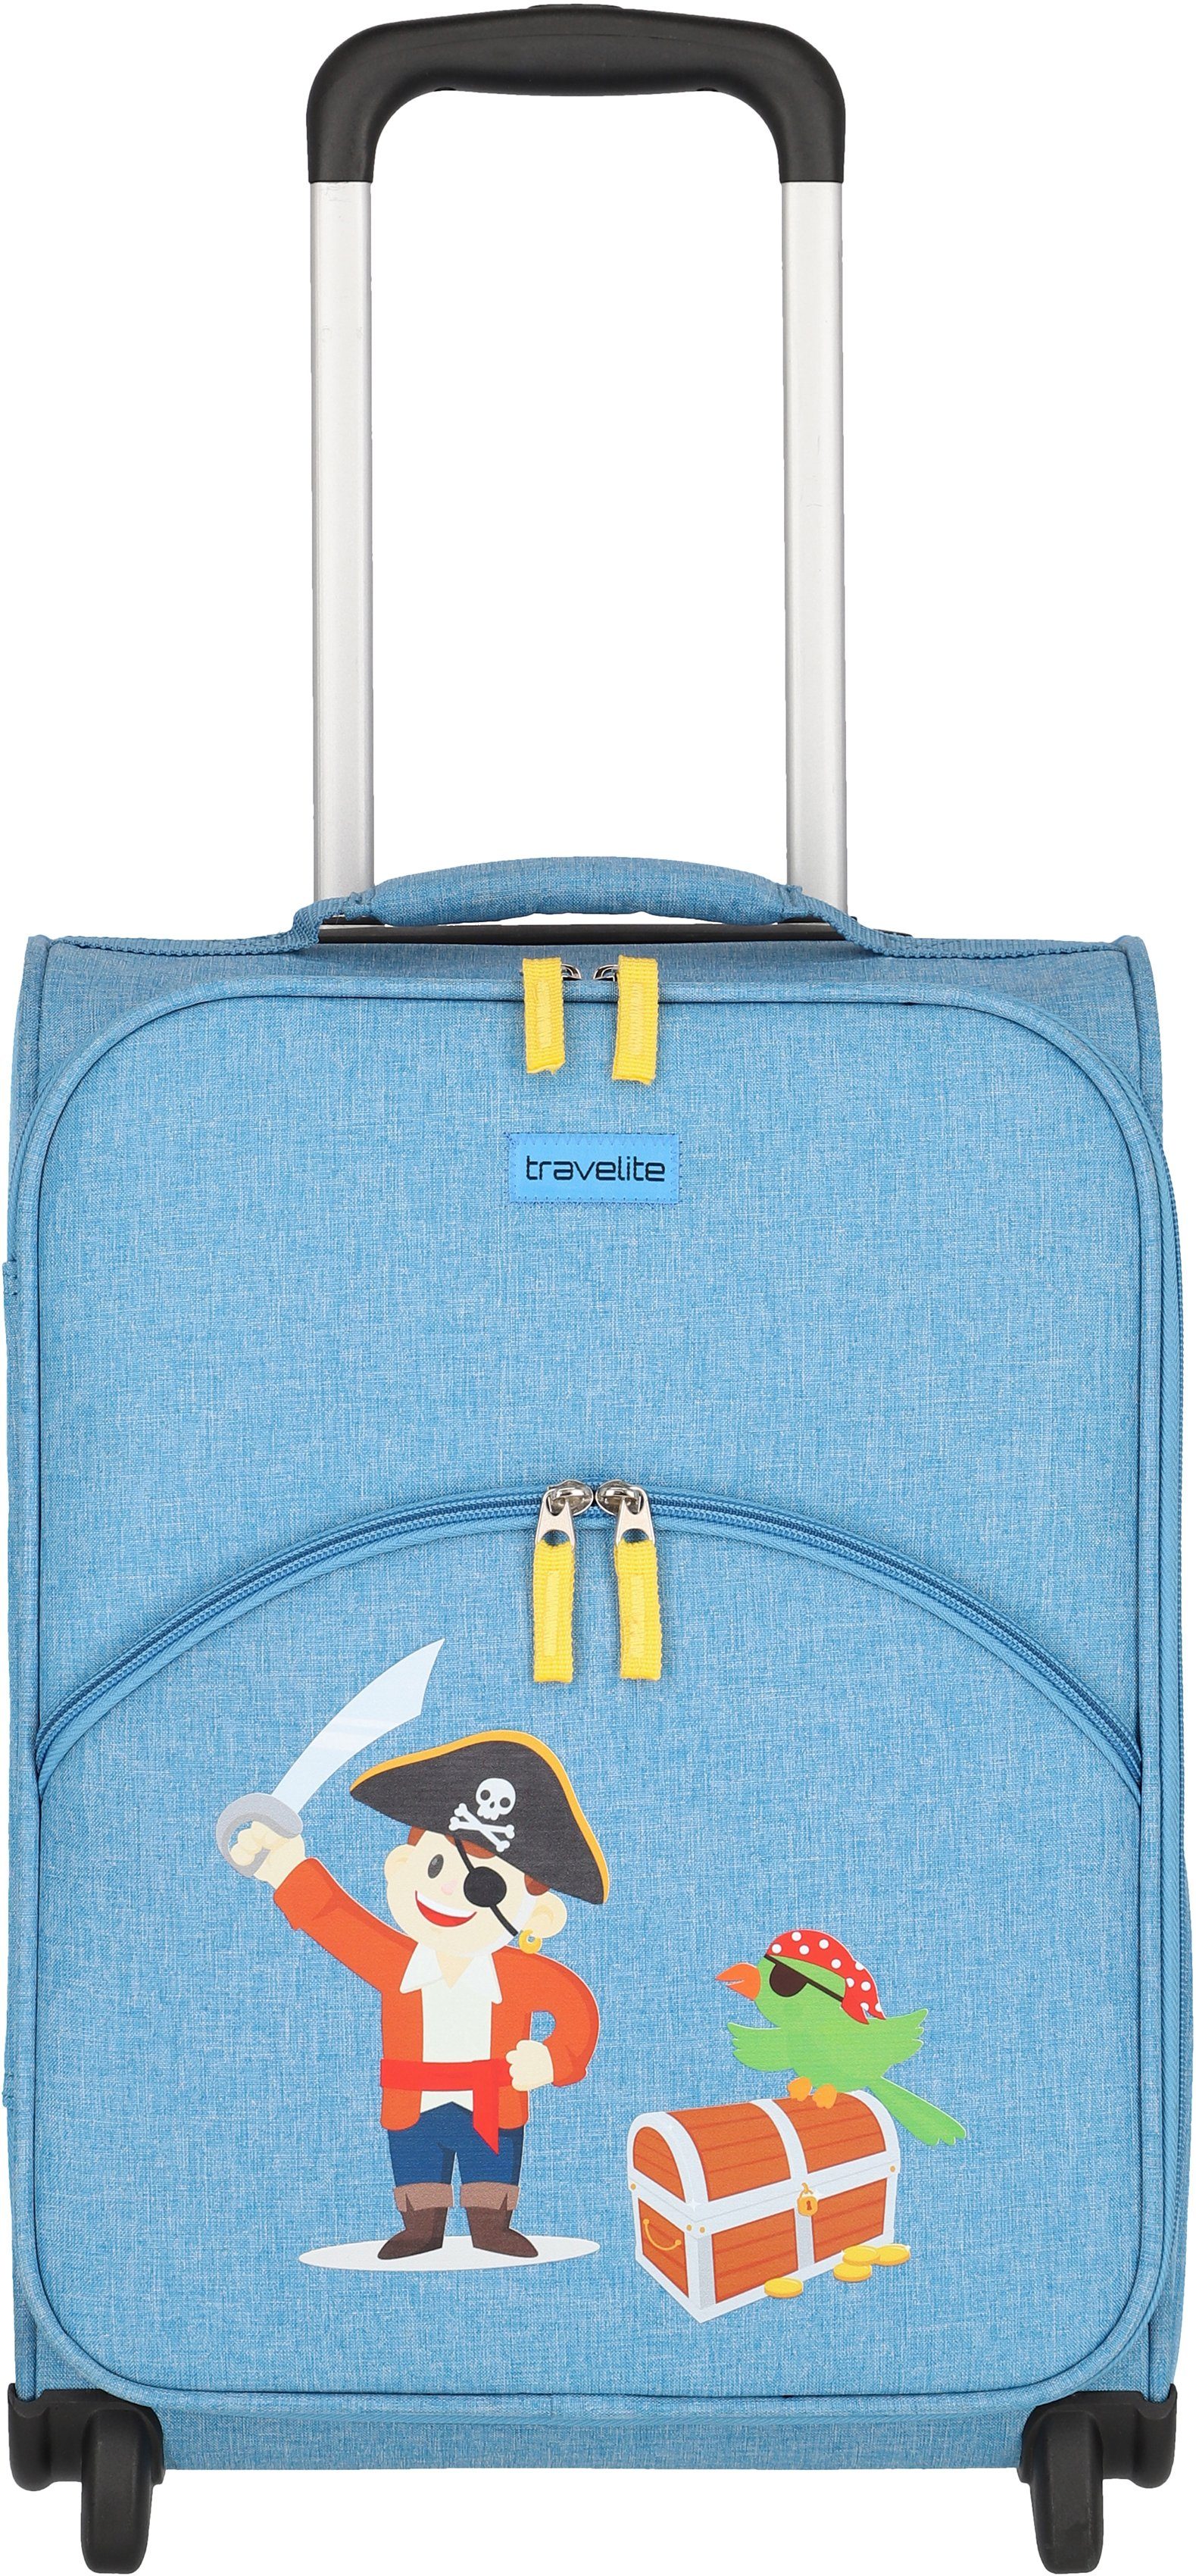 travelite Kinderkoffer Youngster, Pirat, 44 cm, 2 Rollen, Kindertrolley Kinderreisegepäck Handgepäck-Koffer